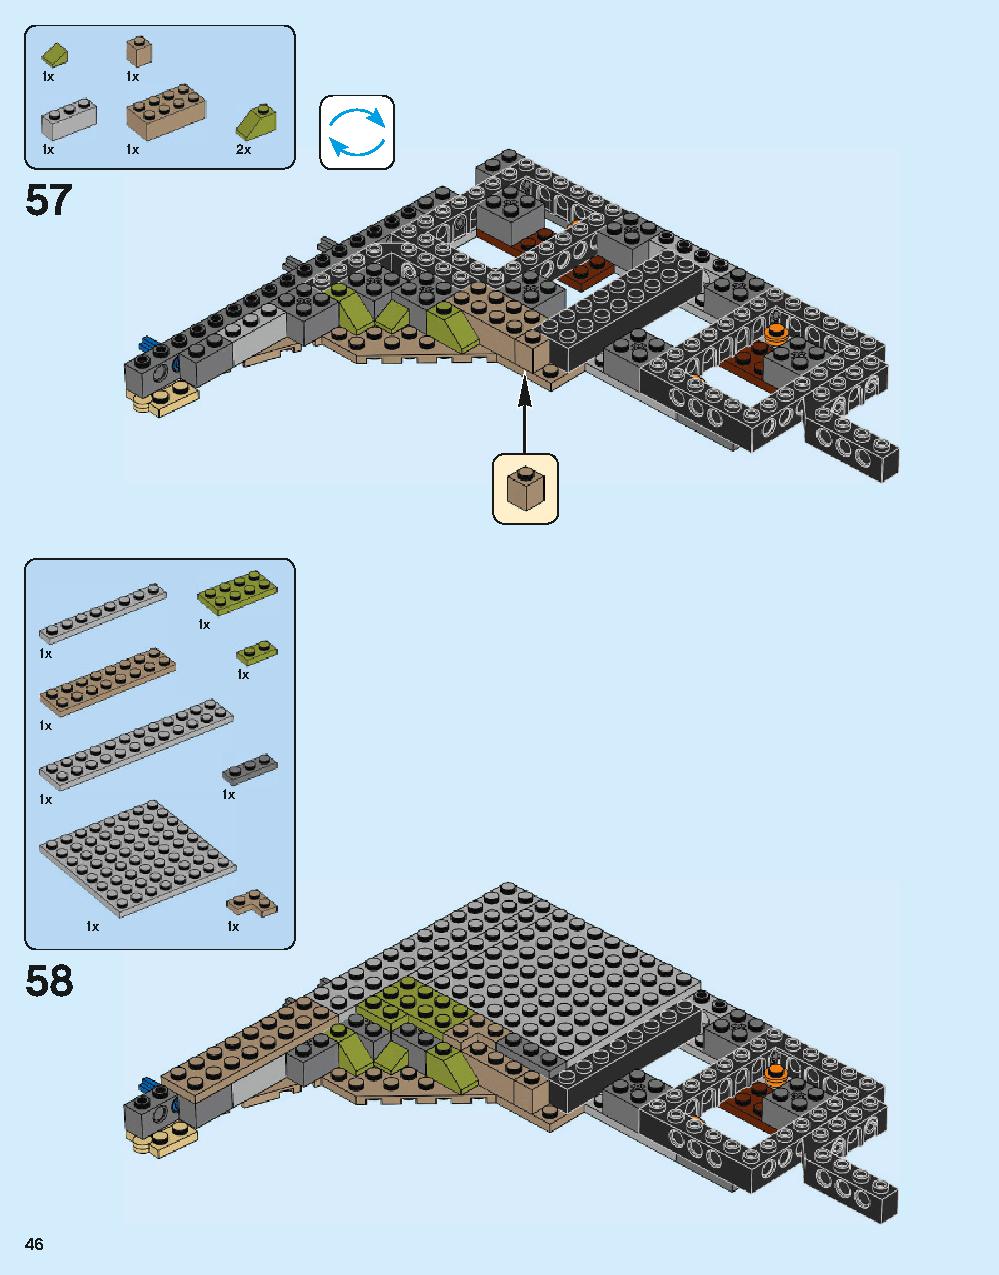 ホグワーツ城 71043 レゴの商品情報 レゴの説明書・組立方法 46 page